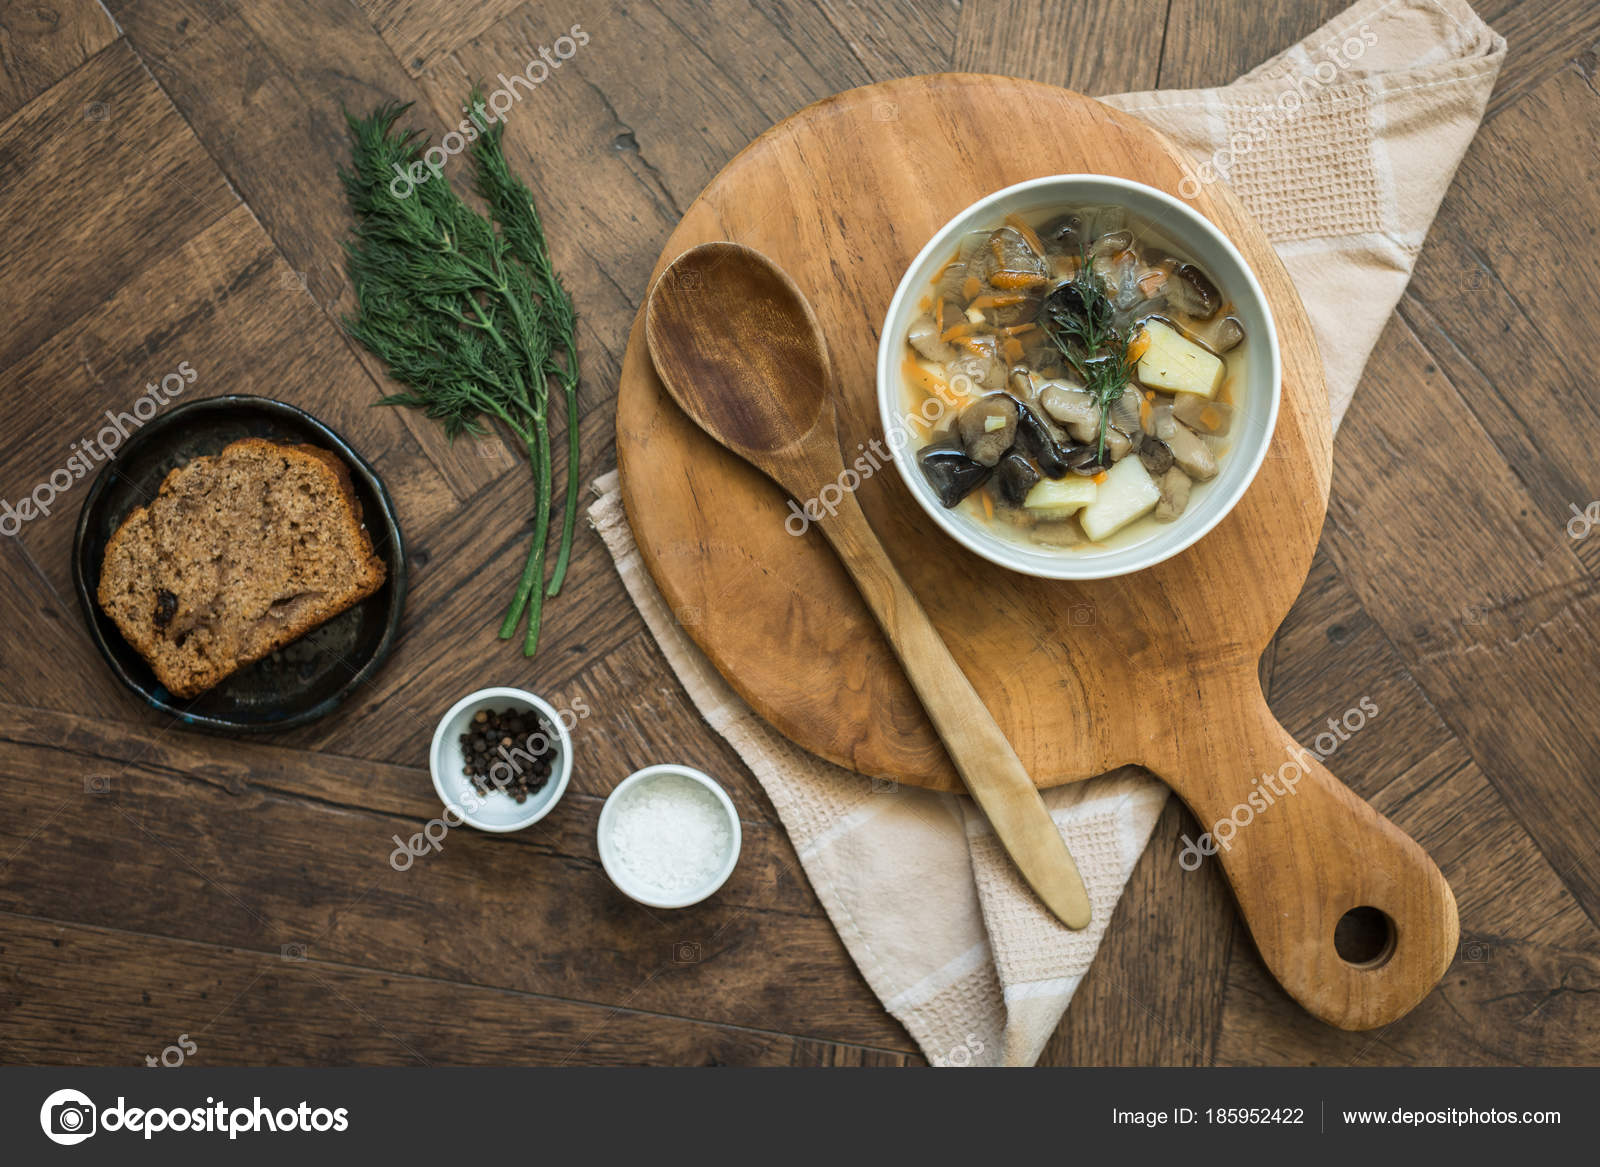 Грибной суп с зеленью, концептуальный обед — Стоковое фото ...